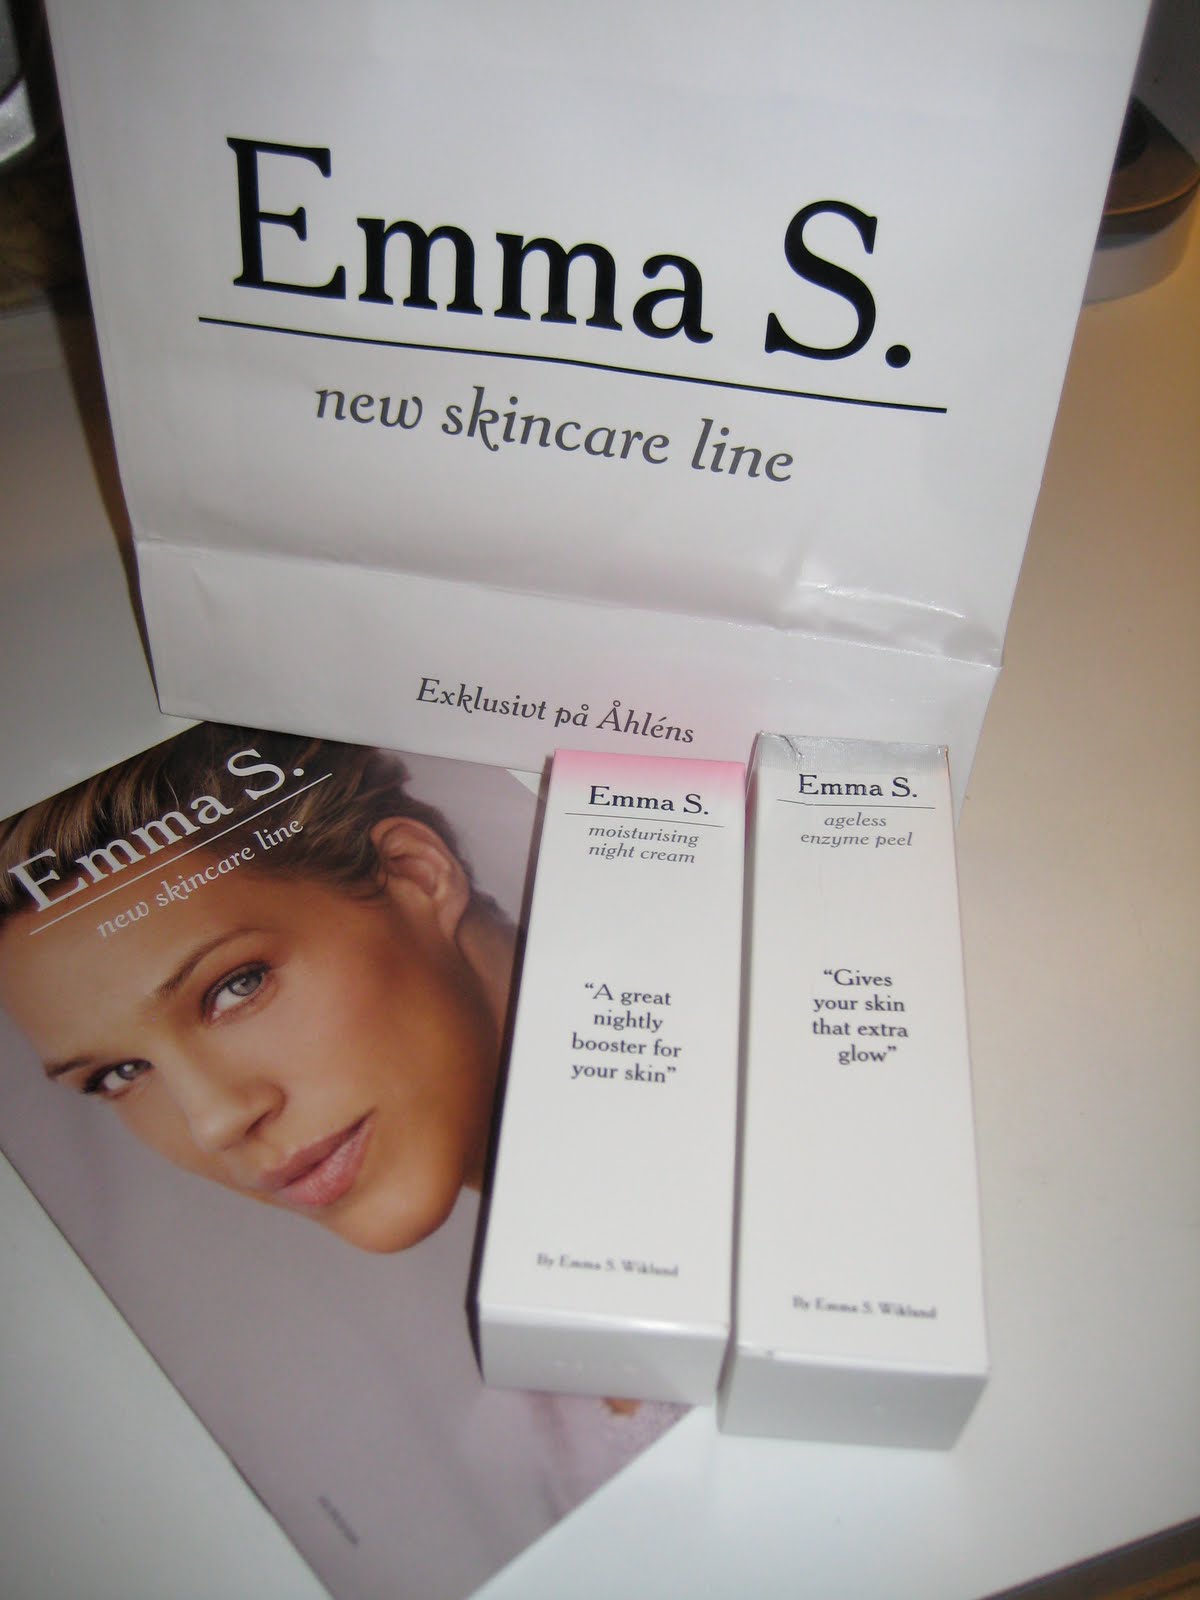 Emma S. skincare